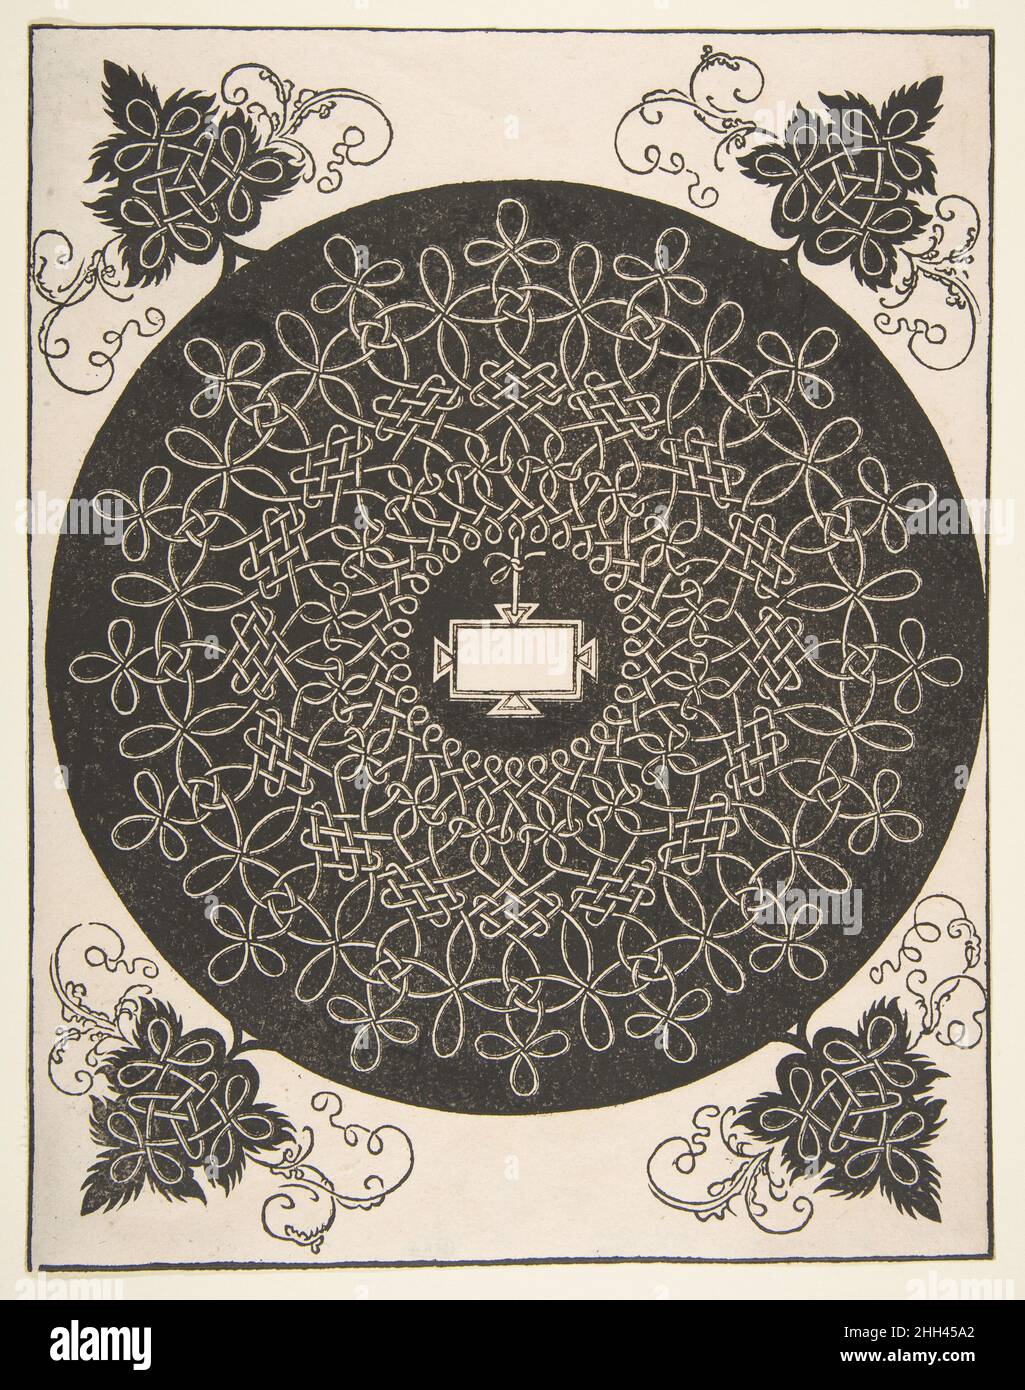 Stickmuster mit Oblong-Panel in der Mitte 1521 vor Albrecht Dürer Deutsches Stickmuster aus sogenannter Knotenarbeit. Das Hauptmuster hat eine kreisförmige Form und ist in Weiß auf dunklem Grund dargestellt. Die verknoteten Seile oder Gurte bilden drei Ebenen um das zentrale Motiv, das eine längliche, unbedruckte Platte ist. An allen vier Ecken wurde ein weiteres, blattförmiges Ornament hinzugefügt, das aus dem Kreis herausragt. Die Blätter sind mit mehr Knotenarbeit in Weiß auf dem dunklen Boden gefüllt, während wirbelnde Riemen in Schwarz sie umgeben. Stickmuster mit einem Oblong-Panel in seinem C Stockfoto